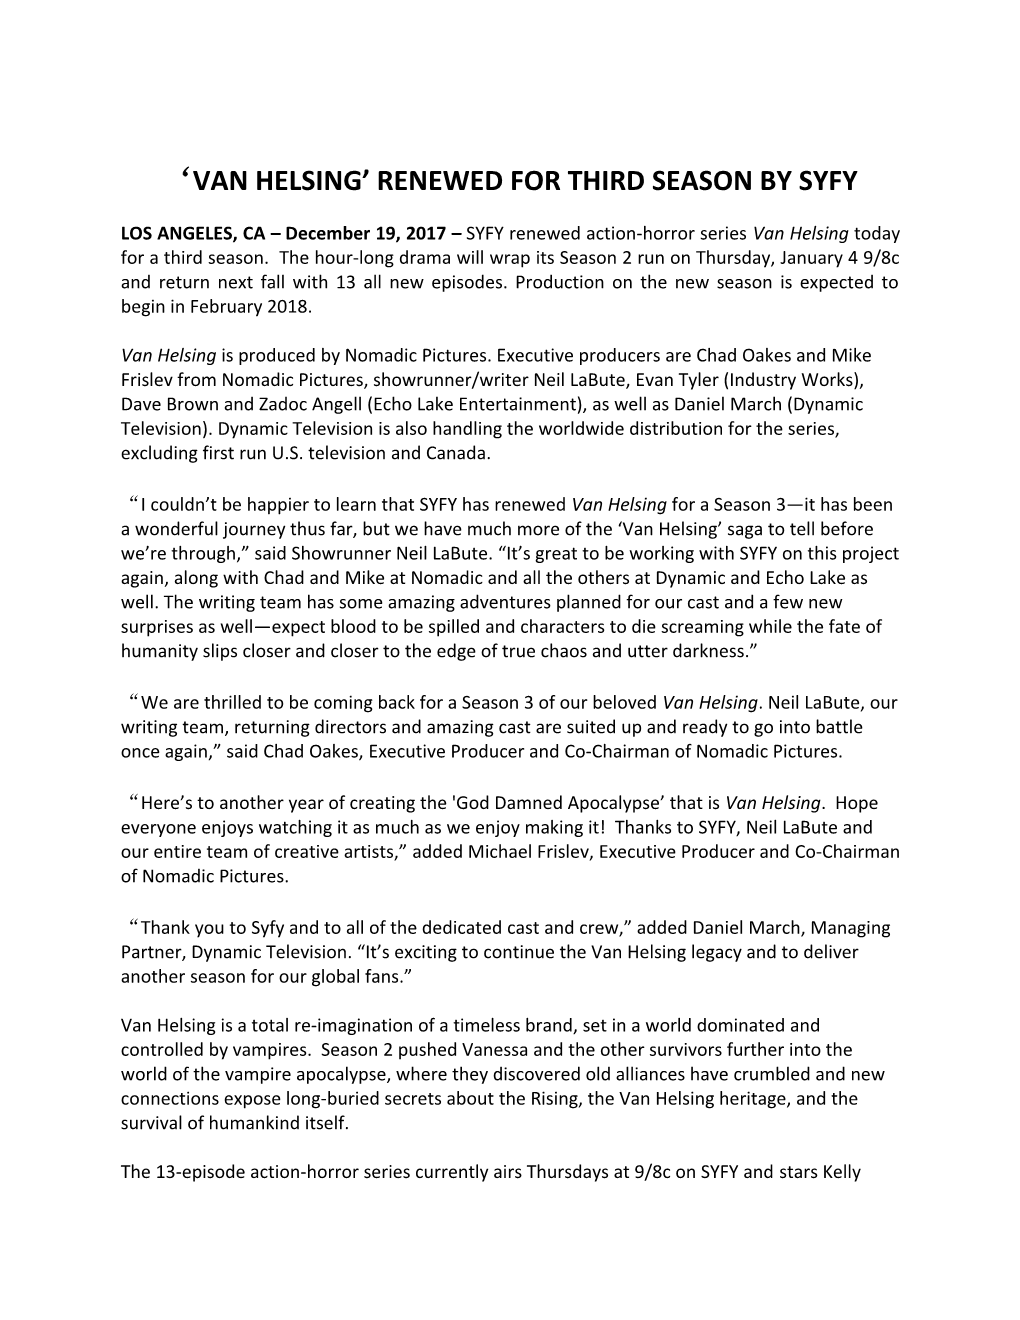 Van Helsing Renewed for Third Season by Syfy